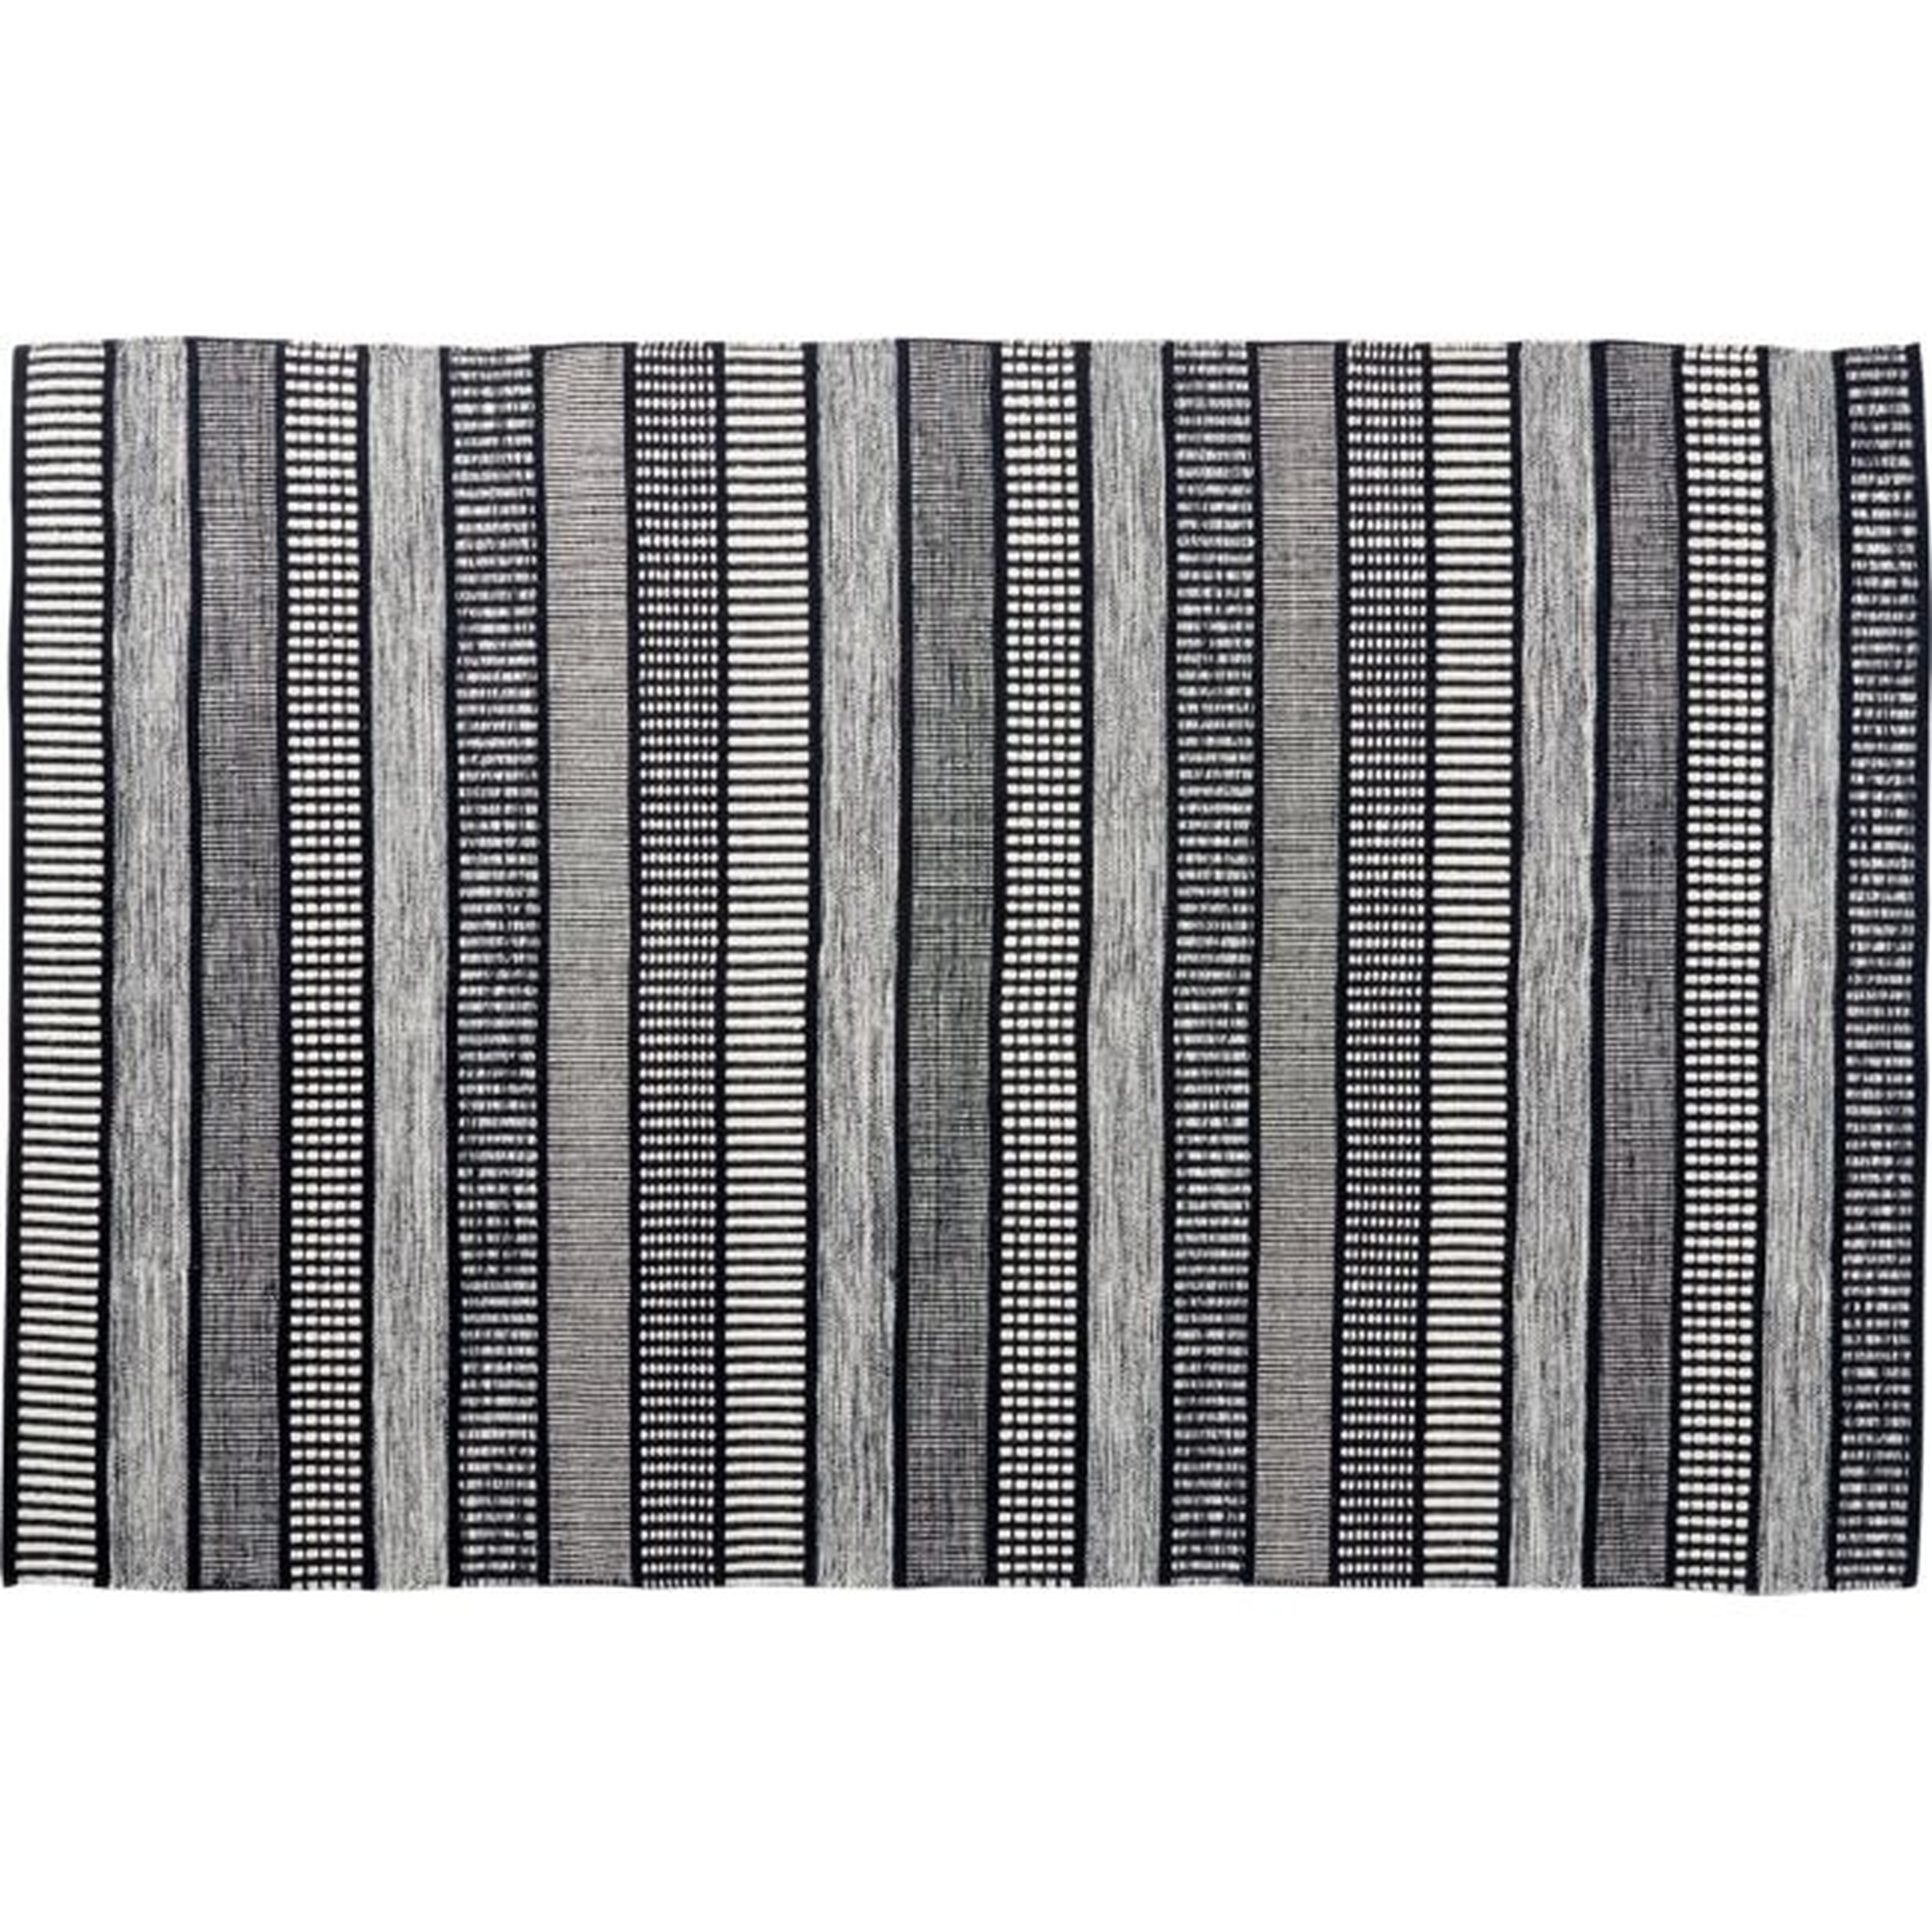 Sloane Handloom Black and White Striped Rug 6'x9' - CB2